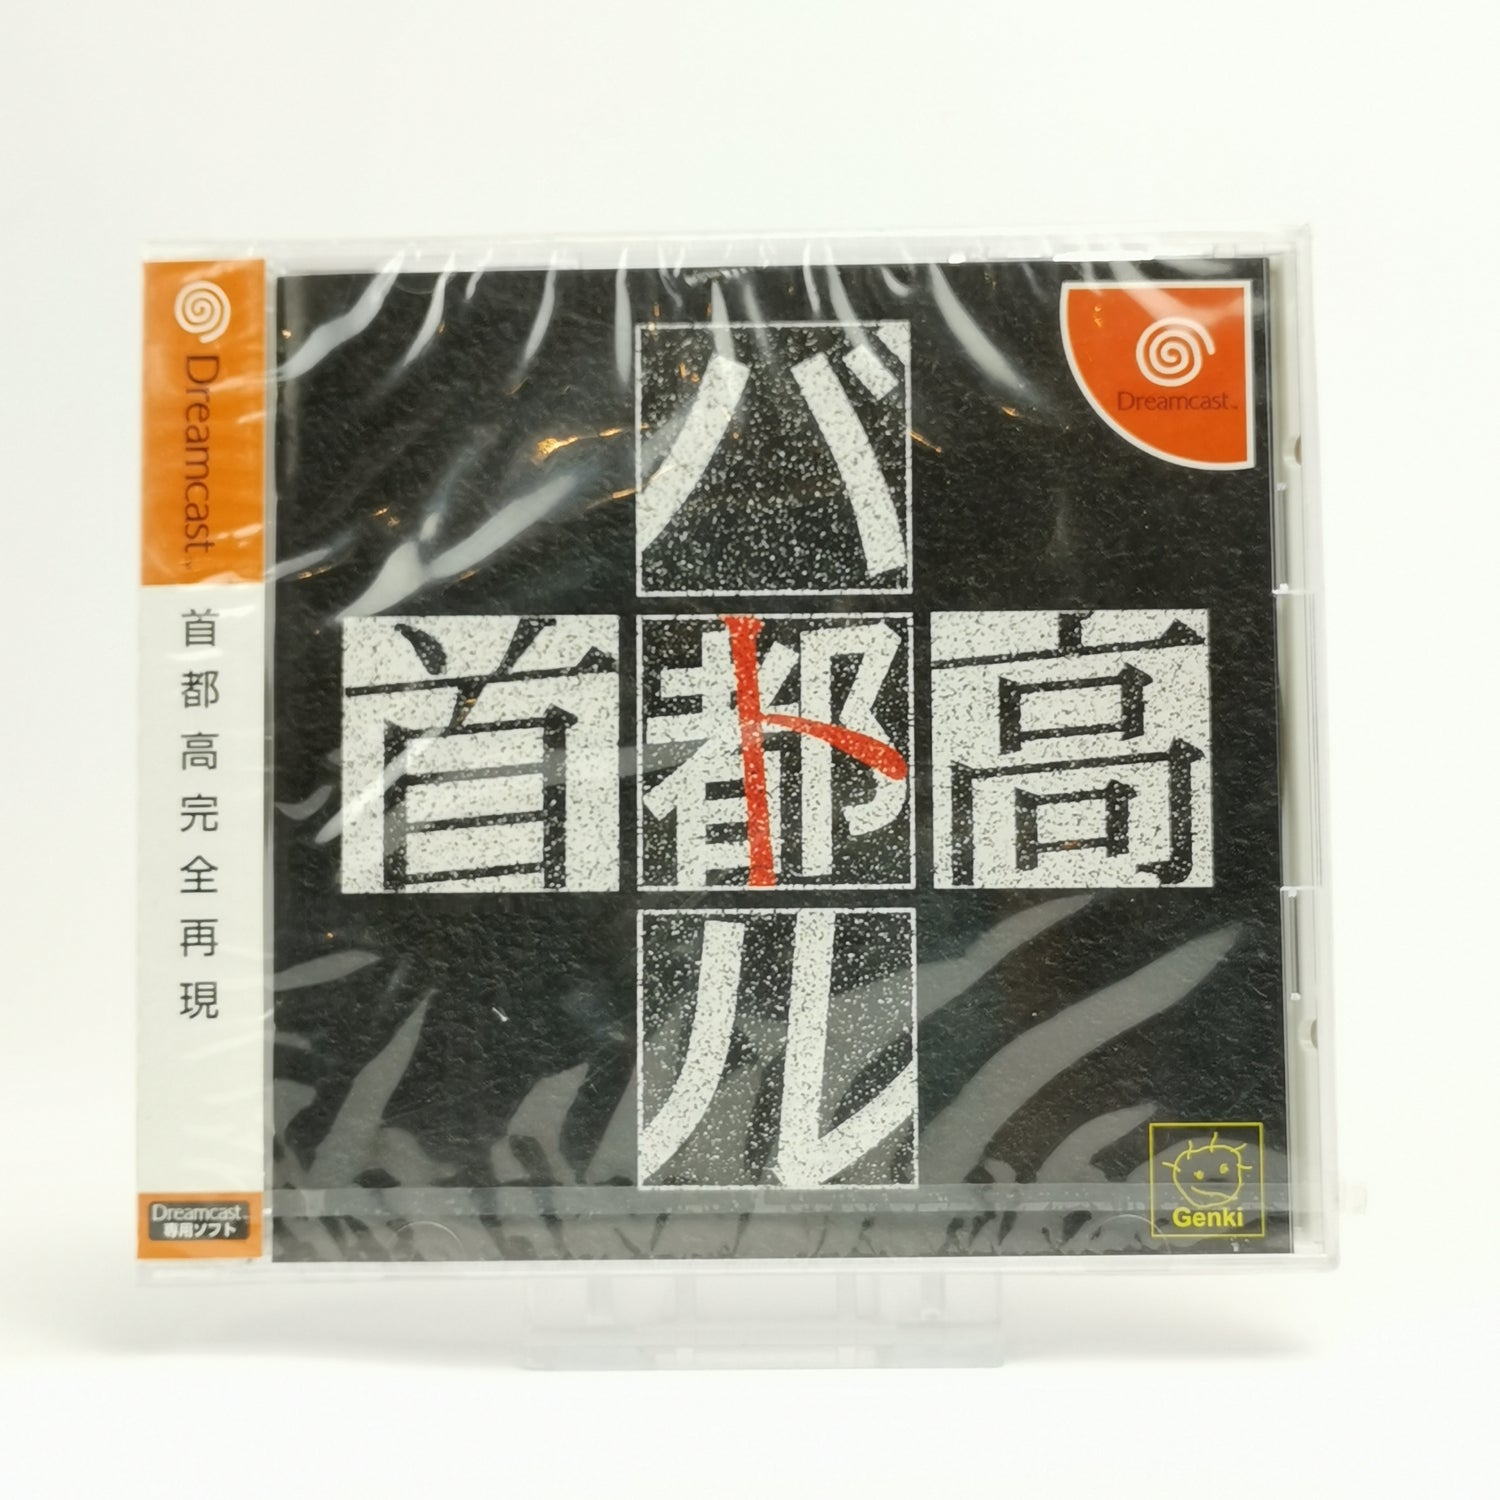 Japanese Sega Dreamcast game: Shutokou Battle | DC OVP - NEW NEW SEALED